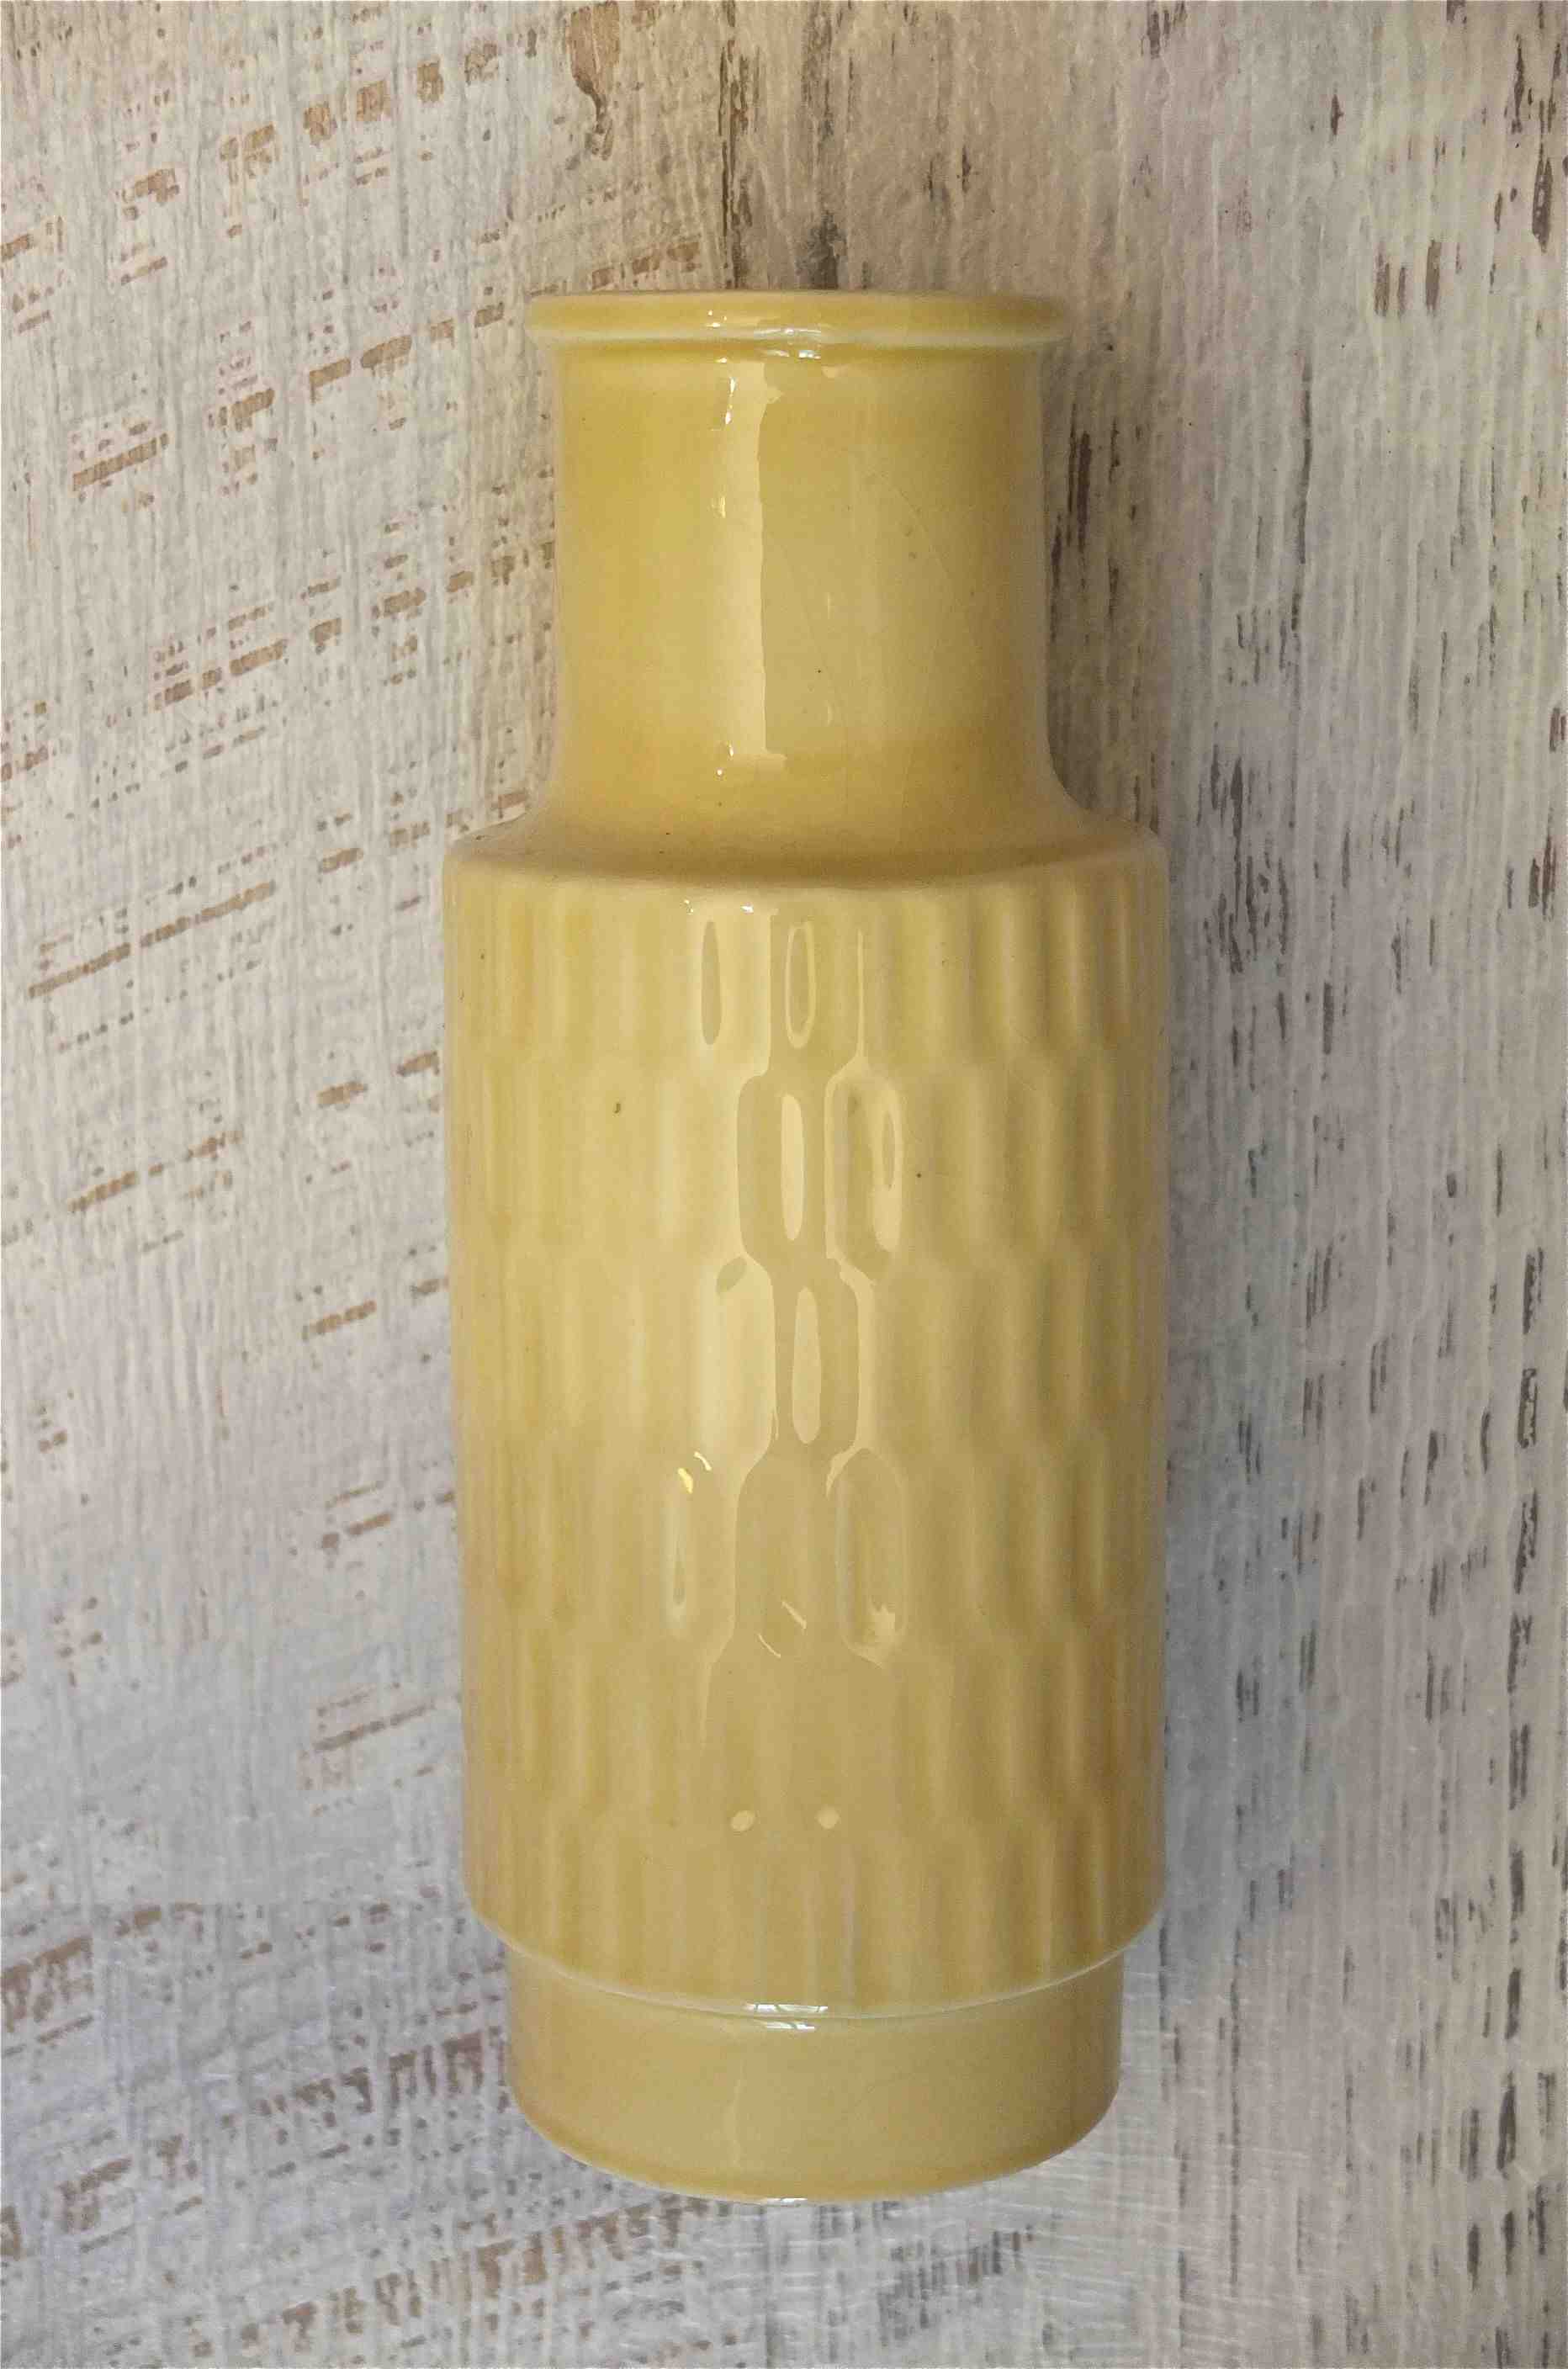 Slavia Vintage vase en porcelaine des annees 60 tchecoslovaque "Vanilla" jaune clair